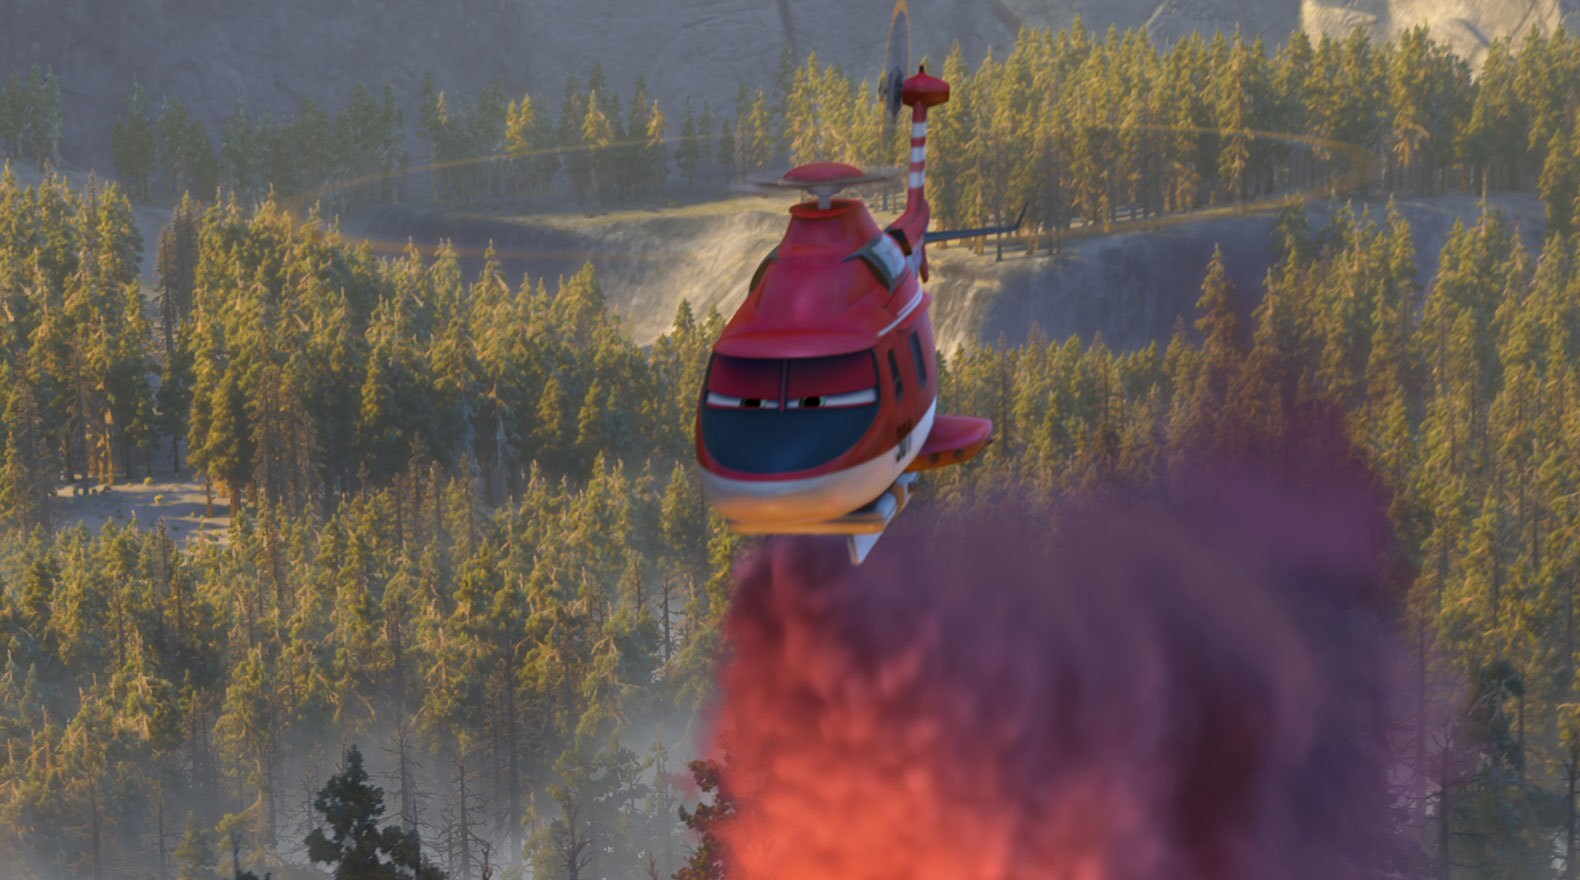 Conoce al nuevo equipo de héroes en Planes: Fire and Rescue de Disney, que aterriza en cines en 3...